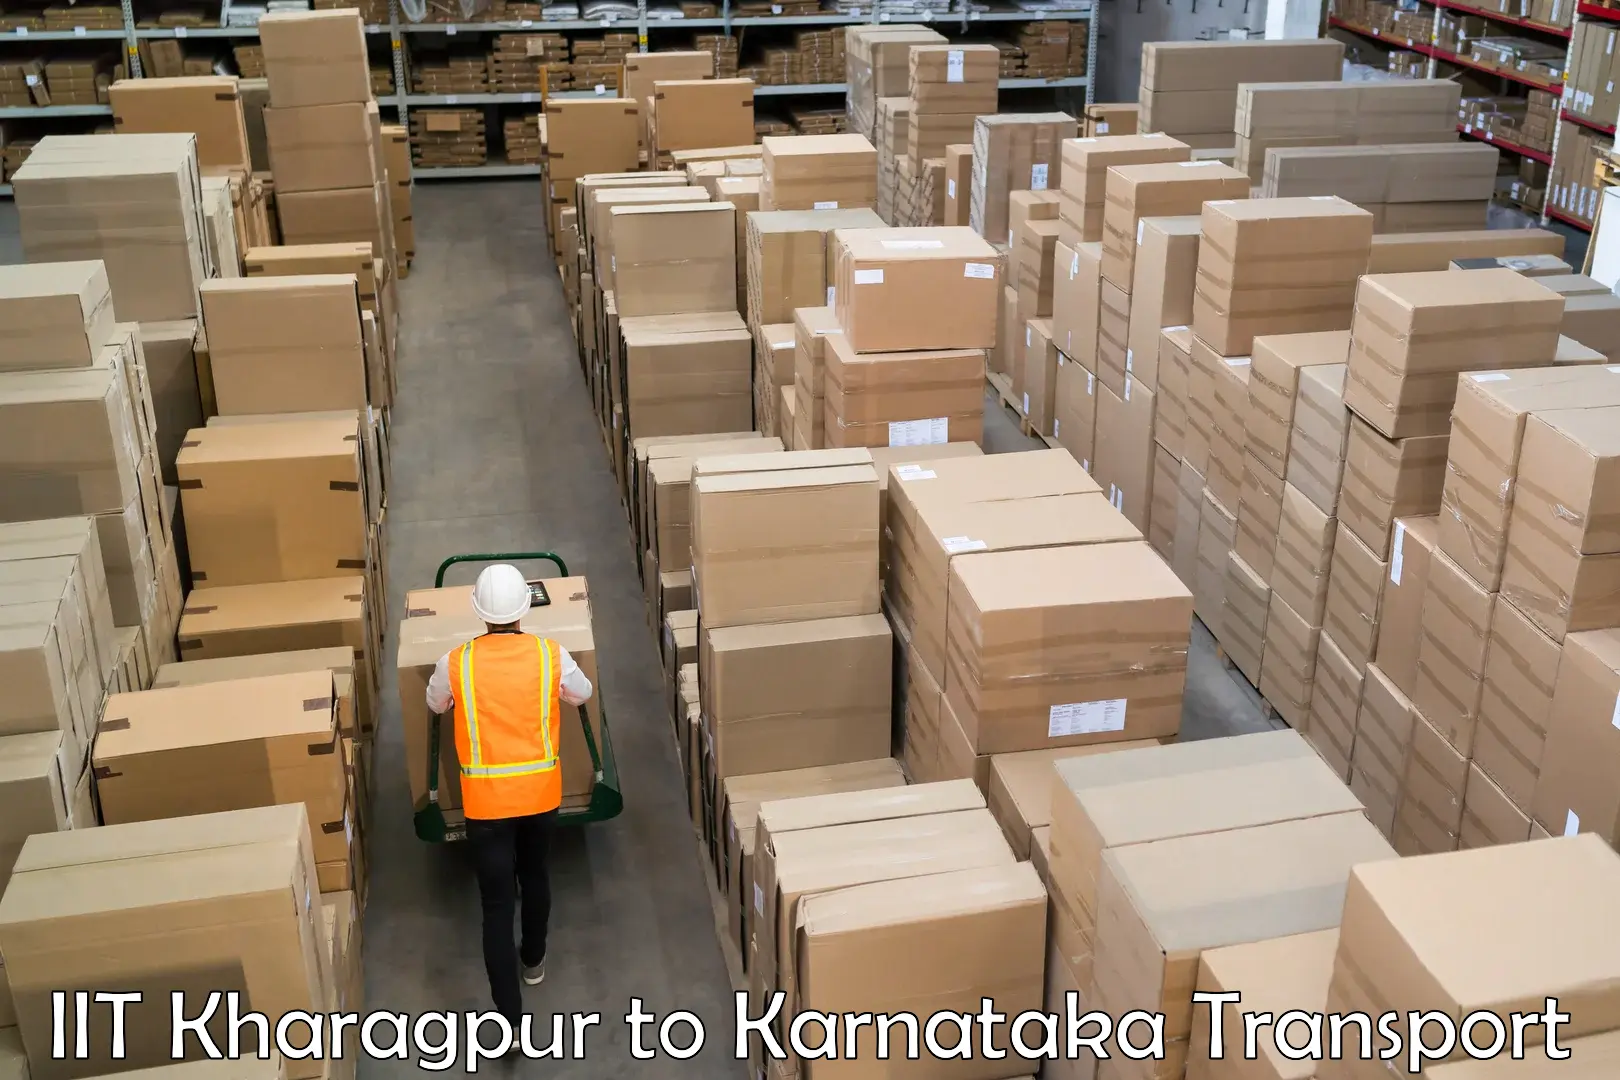 Express transport services IIT Kharagpur to Bangarapet